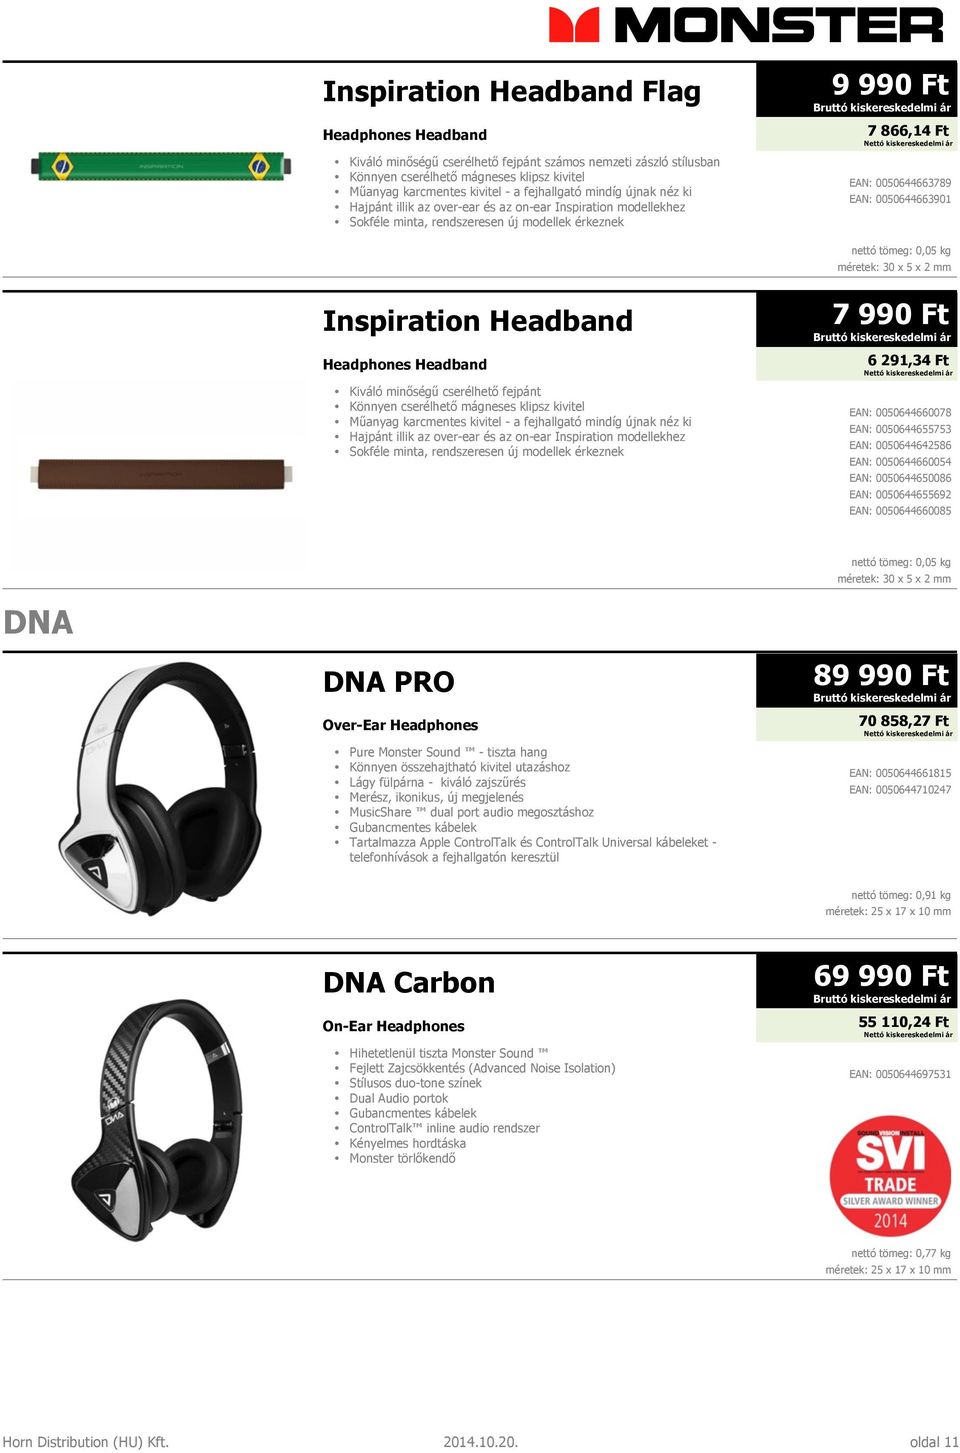 tömeg: 0,05 kg méretek: 30 x 5 x 2 mm Inspiration Headband Headphones Headband Kiváló minőségű cserélhető fejpánt Könnyen cserélhető mágneses klipsz kivitel Műanyag karcmentes kivitel - a fejhallgató